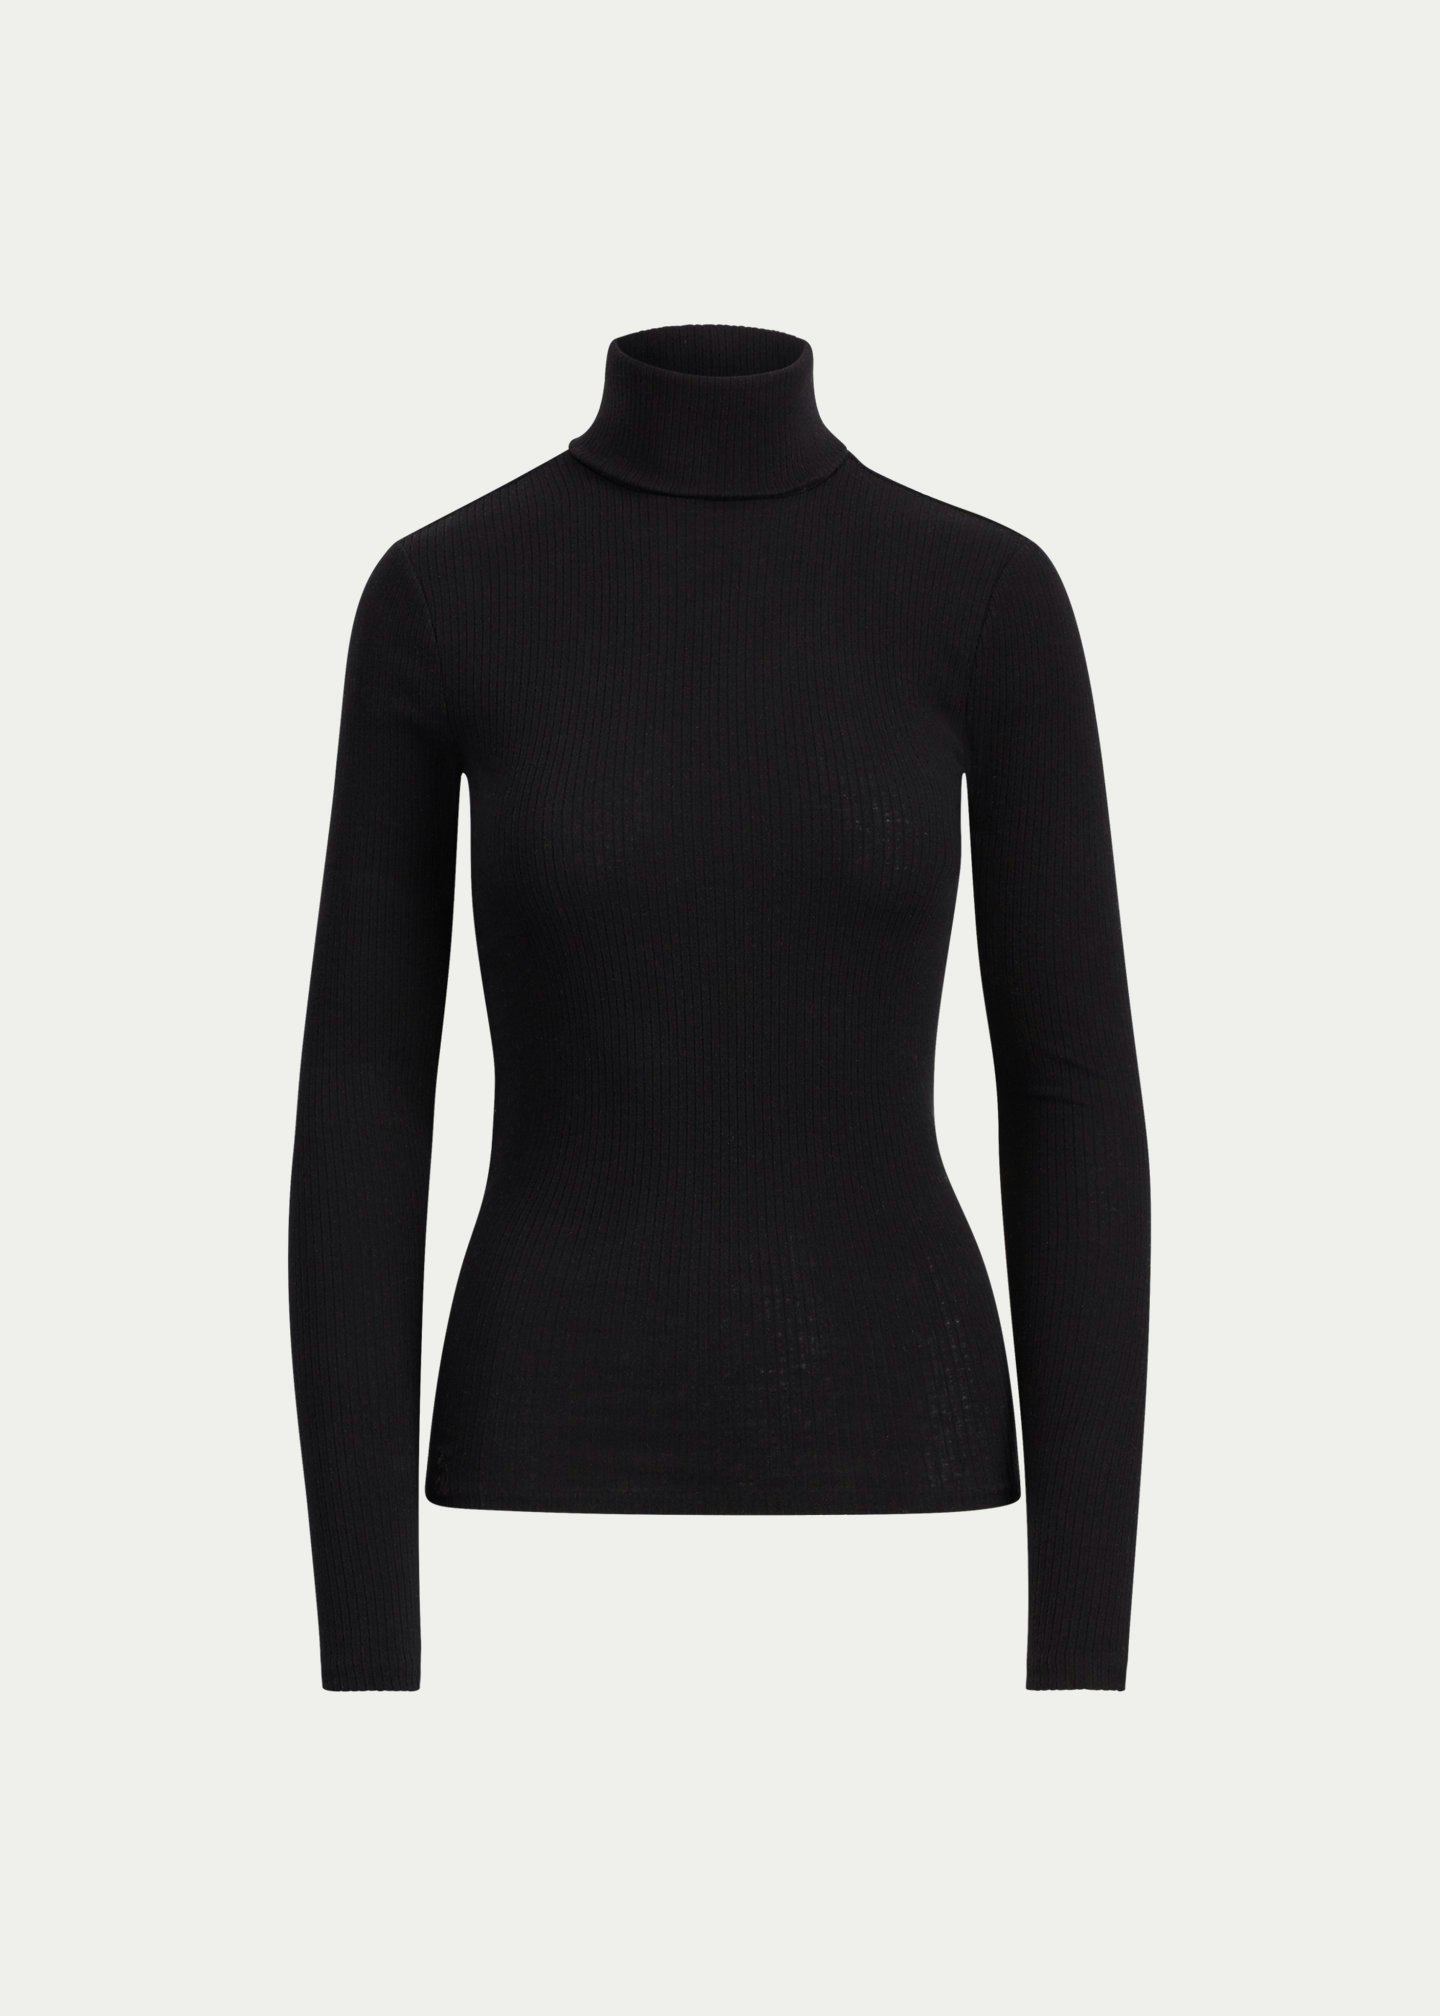 Cashmere Turtle Neck Sweater, £249, Ralph Lauren